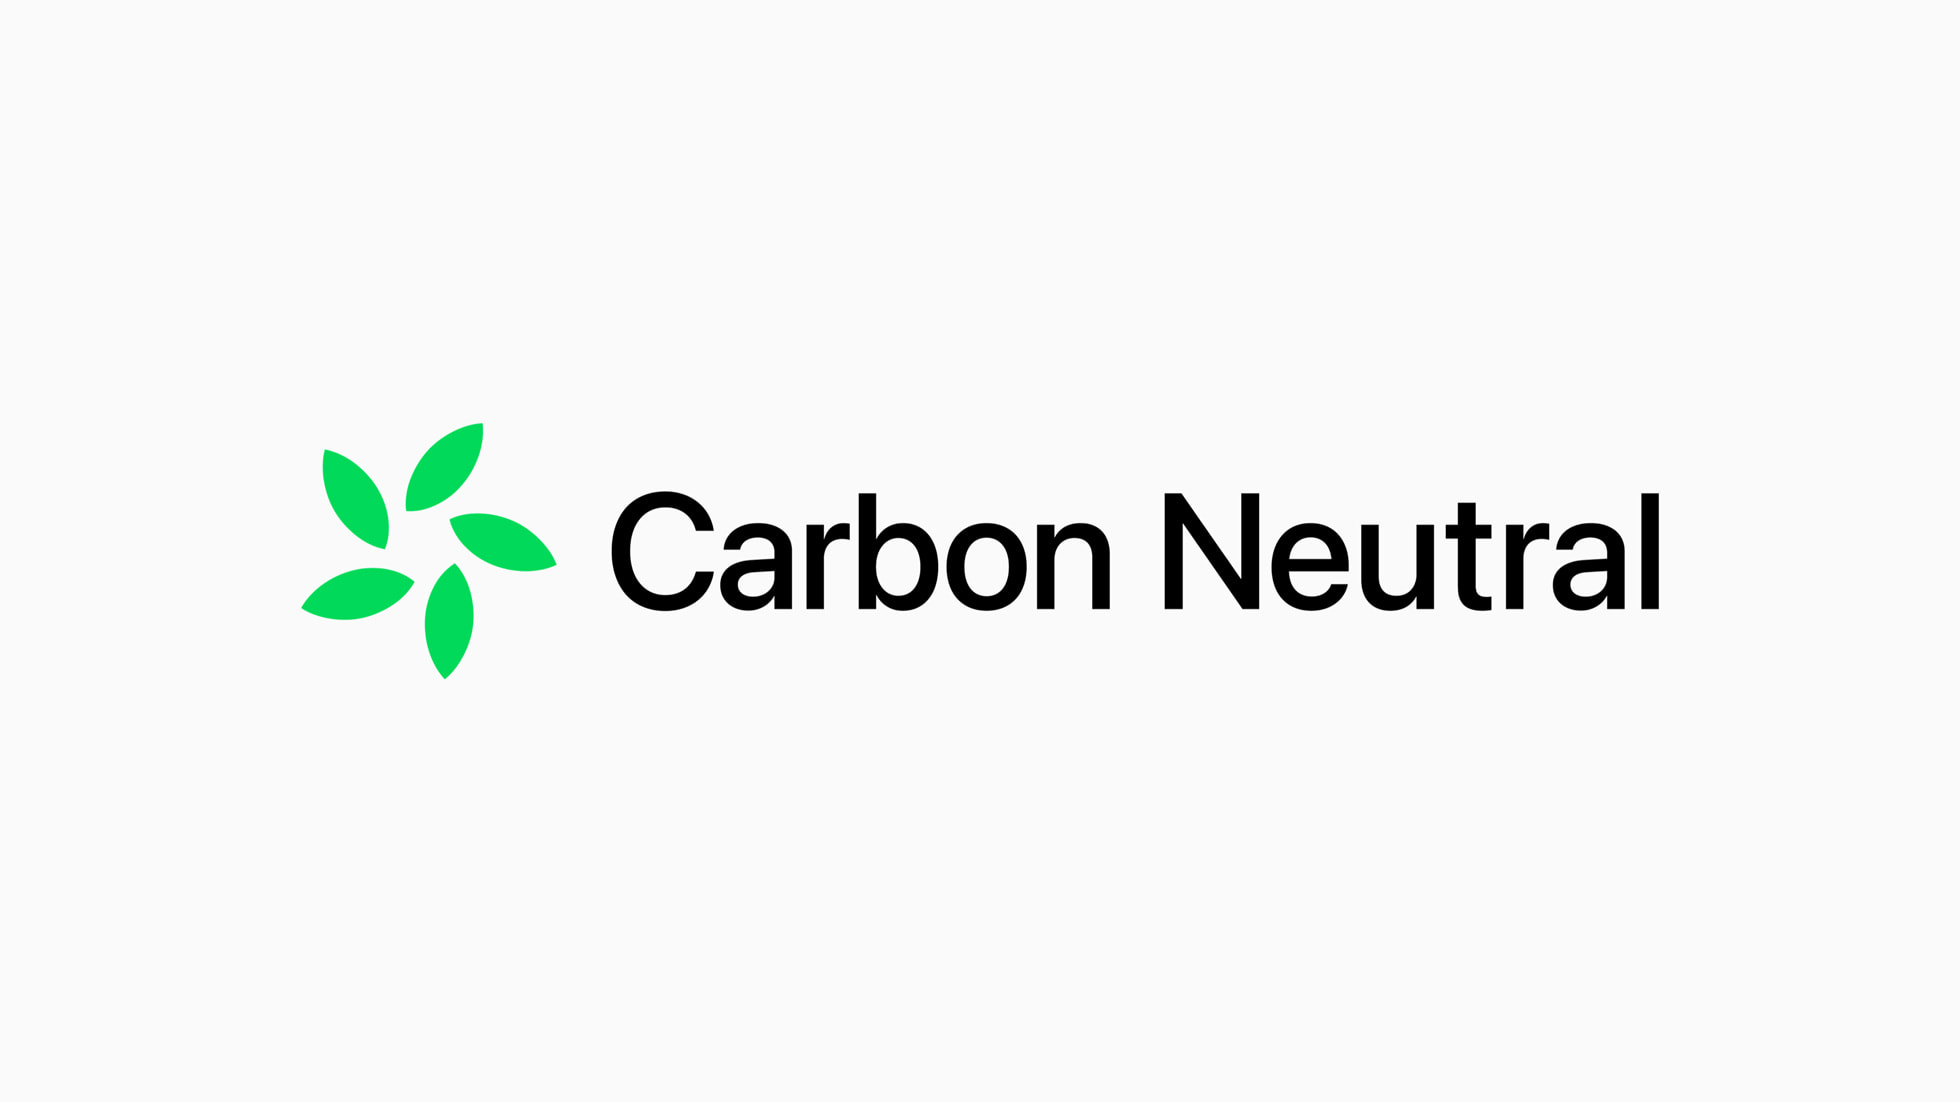 Novo logotipo da iniciativa da Apple para se tornar neutra em carbono.